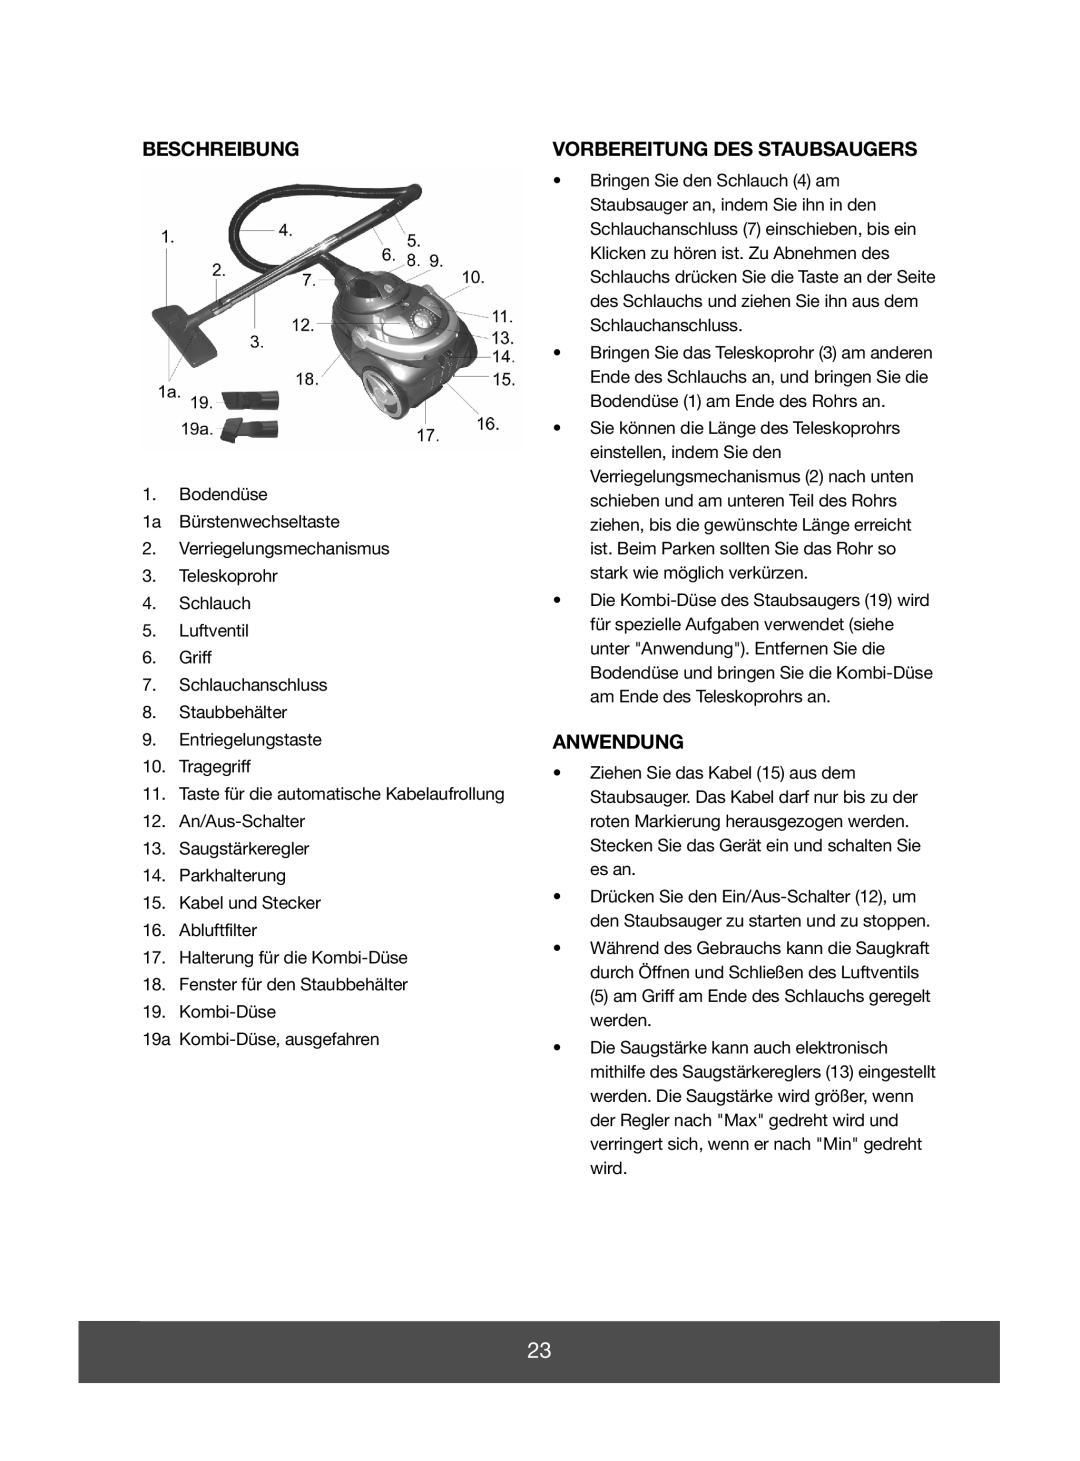 Melissa 640-046 manual Beschreibung, Vorbereitung Des Staubsaugers, Anwendung 